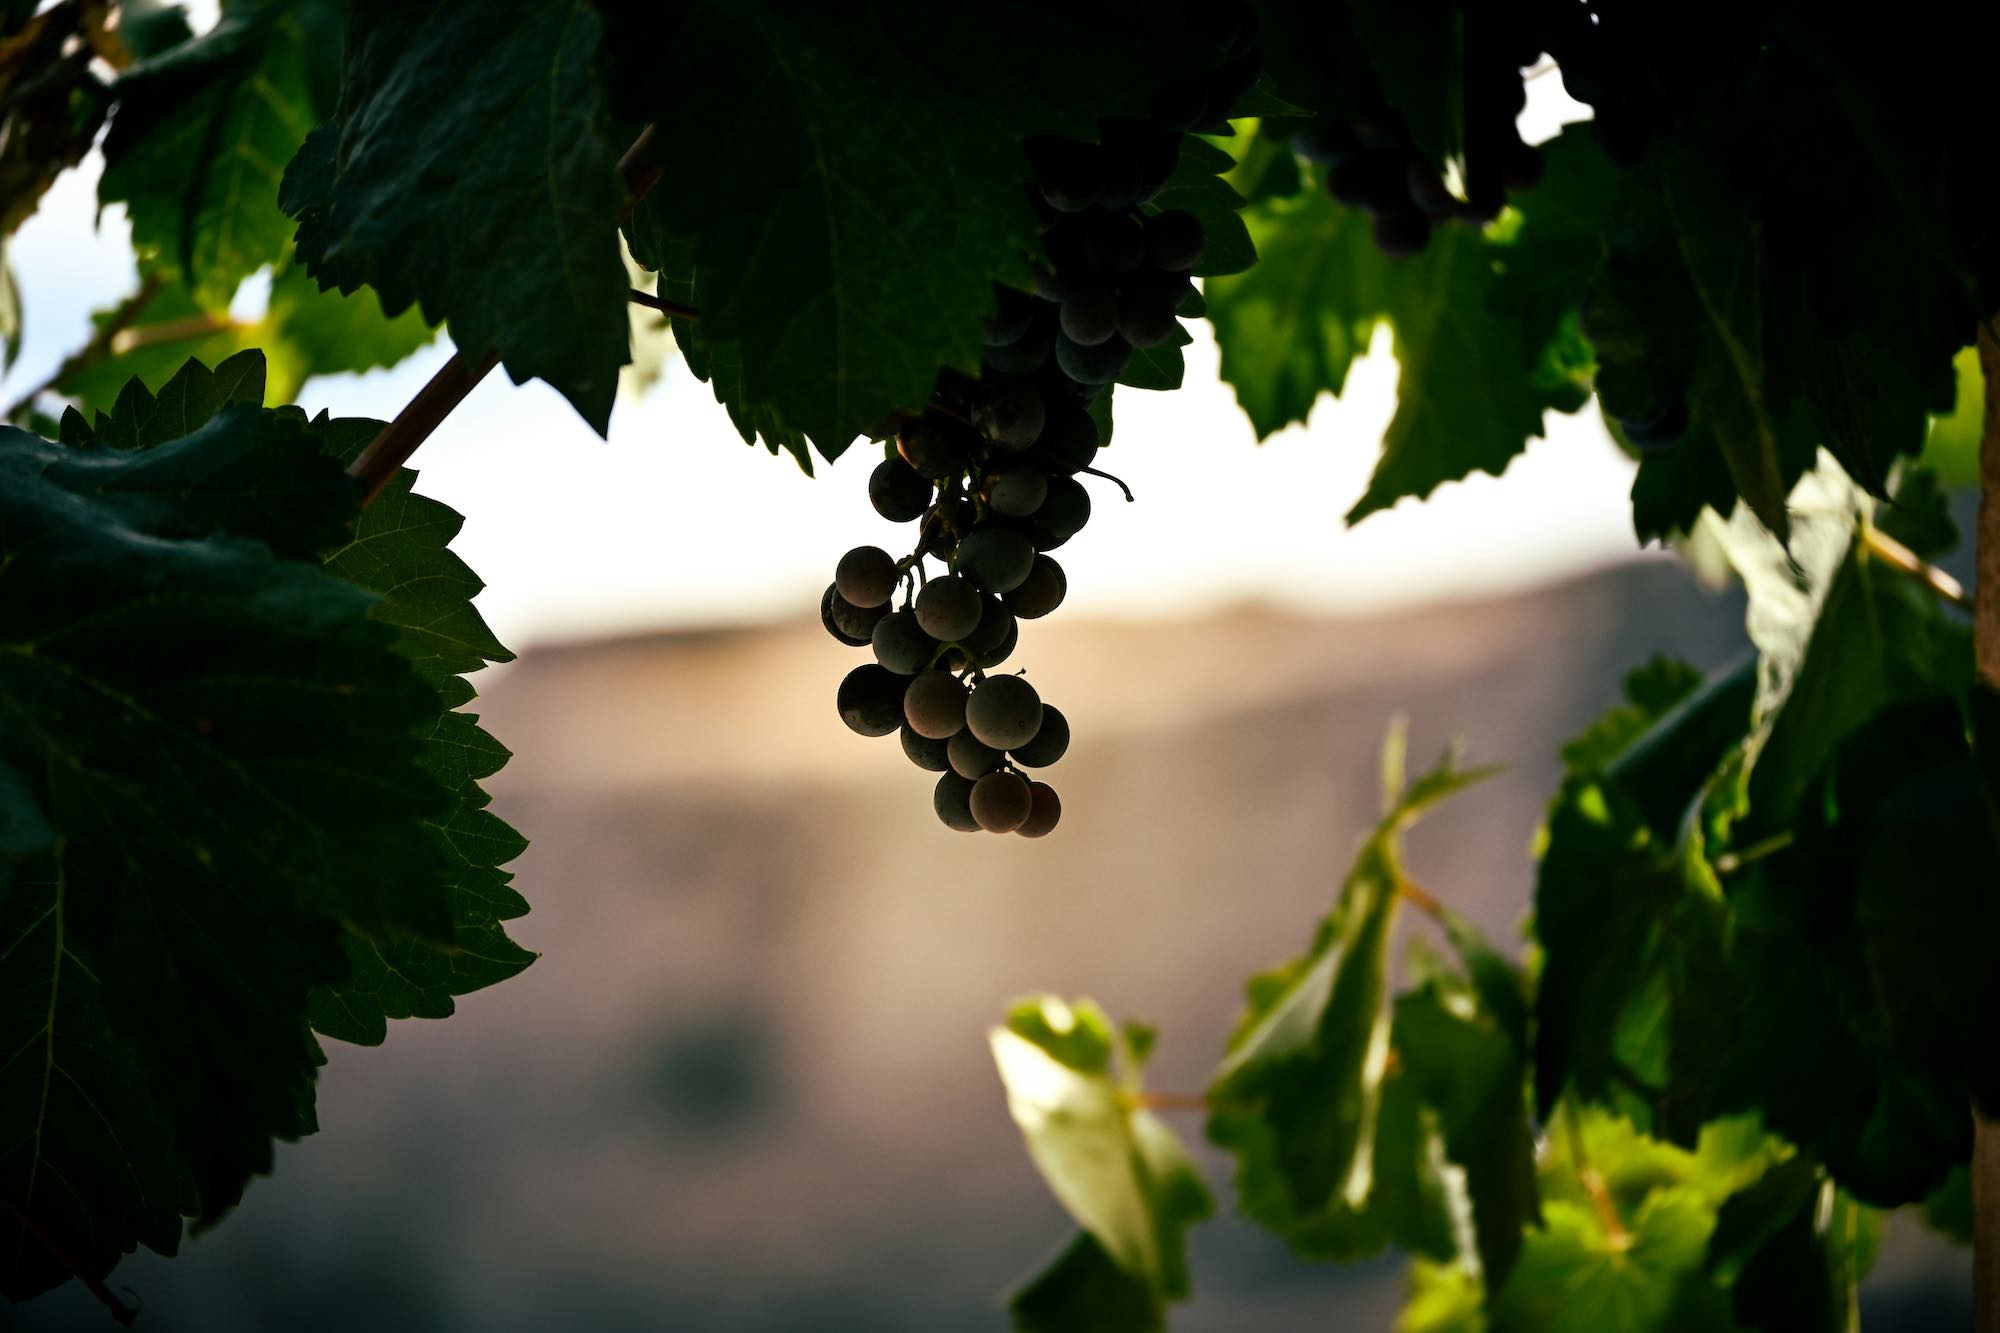 Grappolo d'uva tra le vigne al tramonto